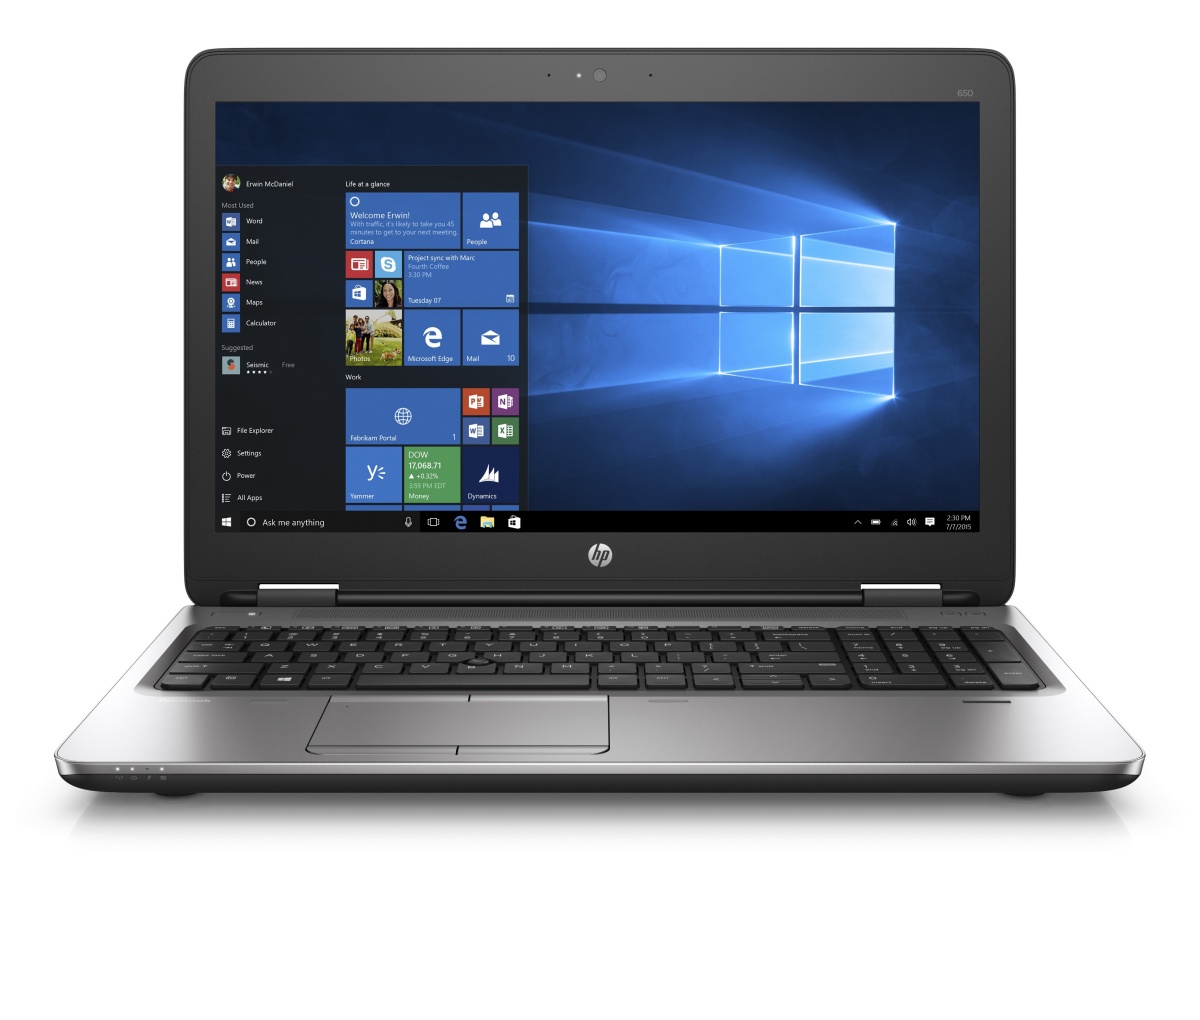 HP ProBook 650 G2 (V1C09EA)